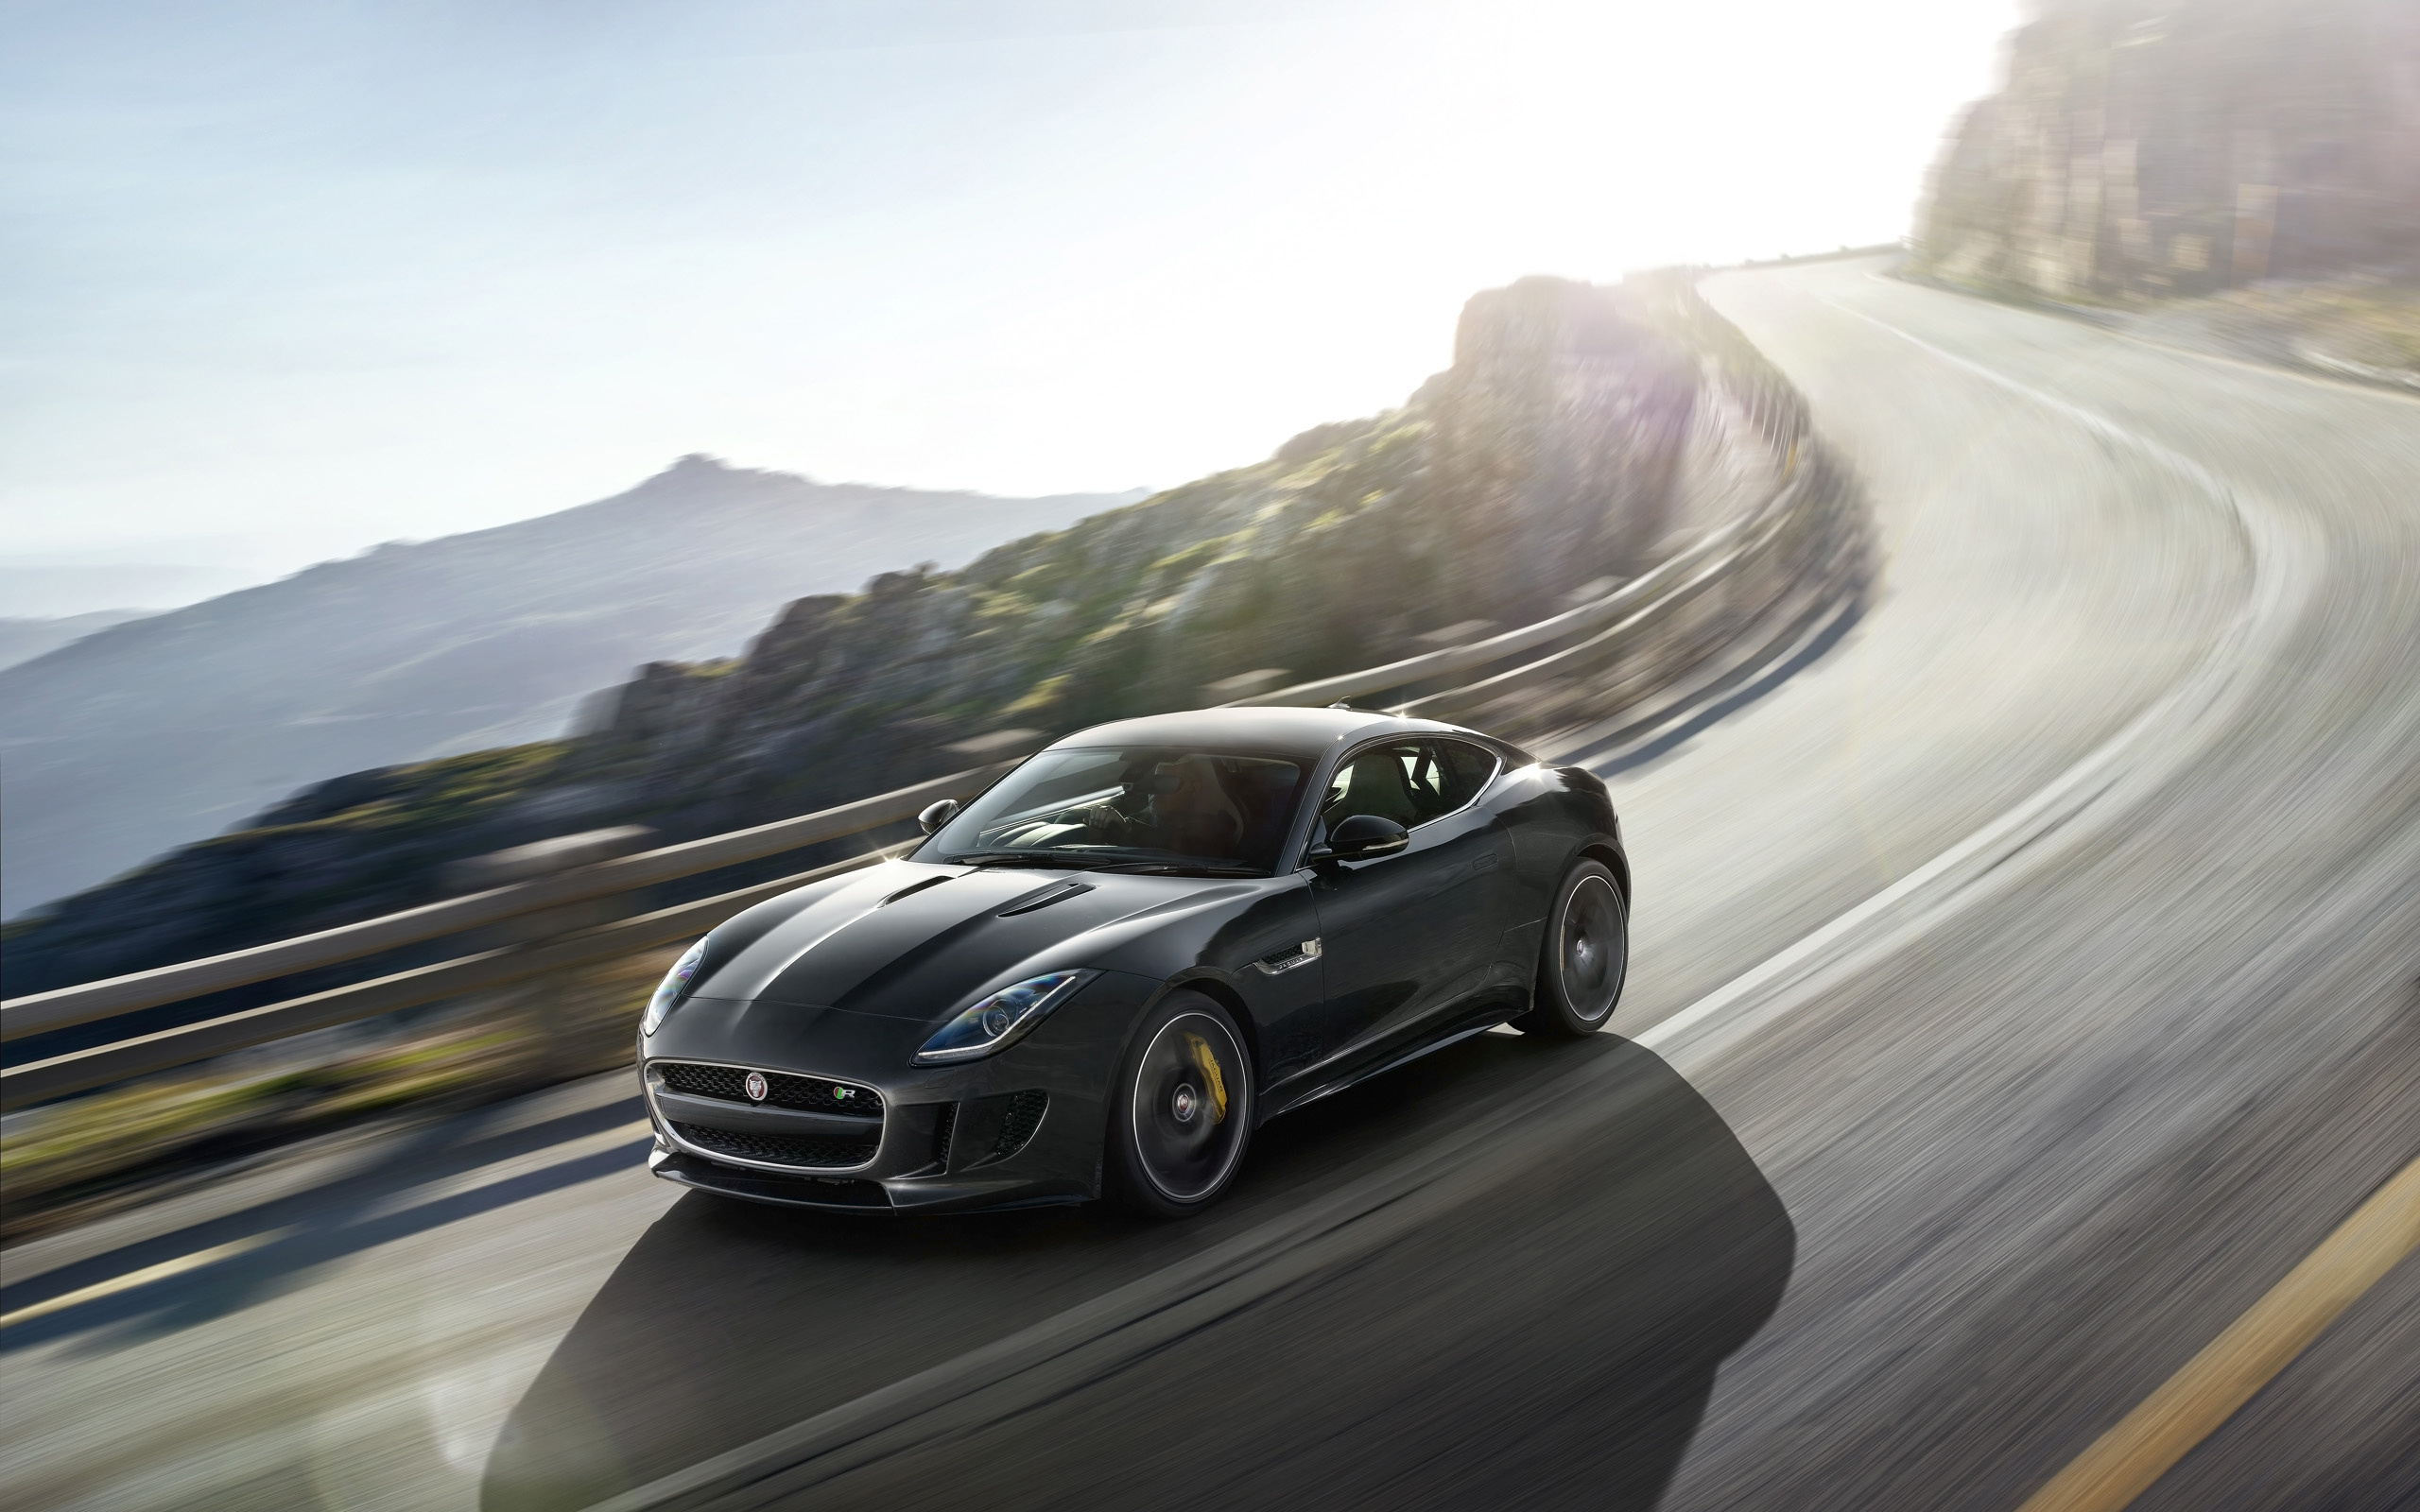 Jaguar F-TYPE, Coupe model, HD wallpapers, Striking appearance, 2560x1600 HD Desktop